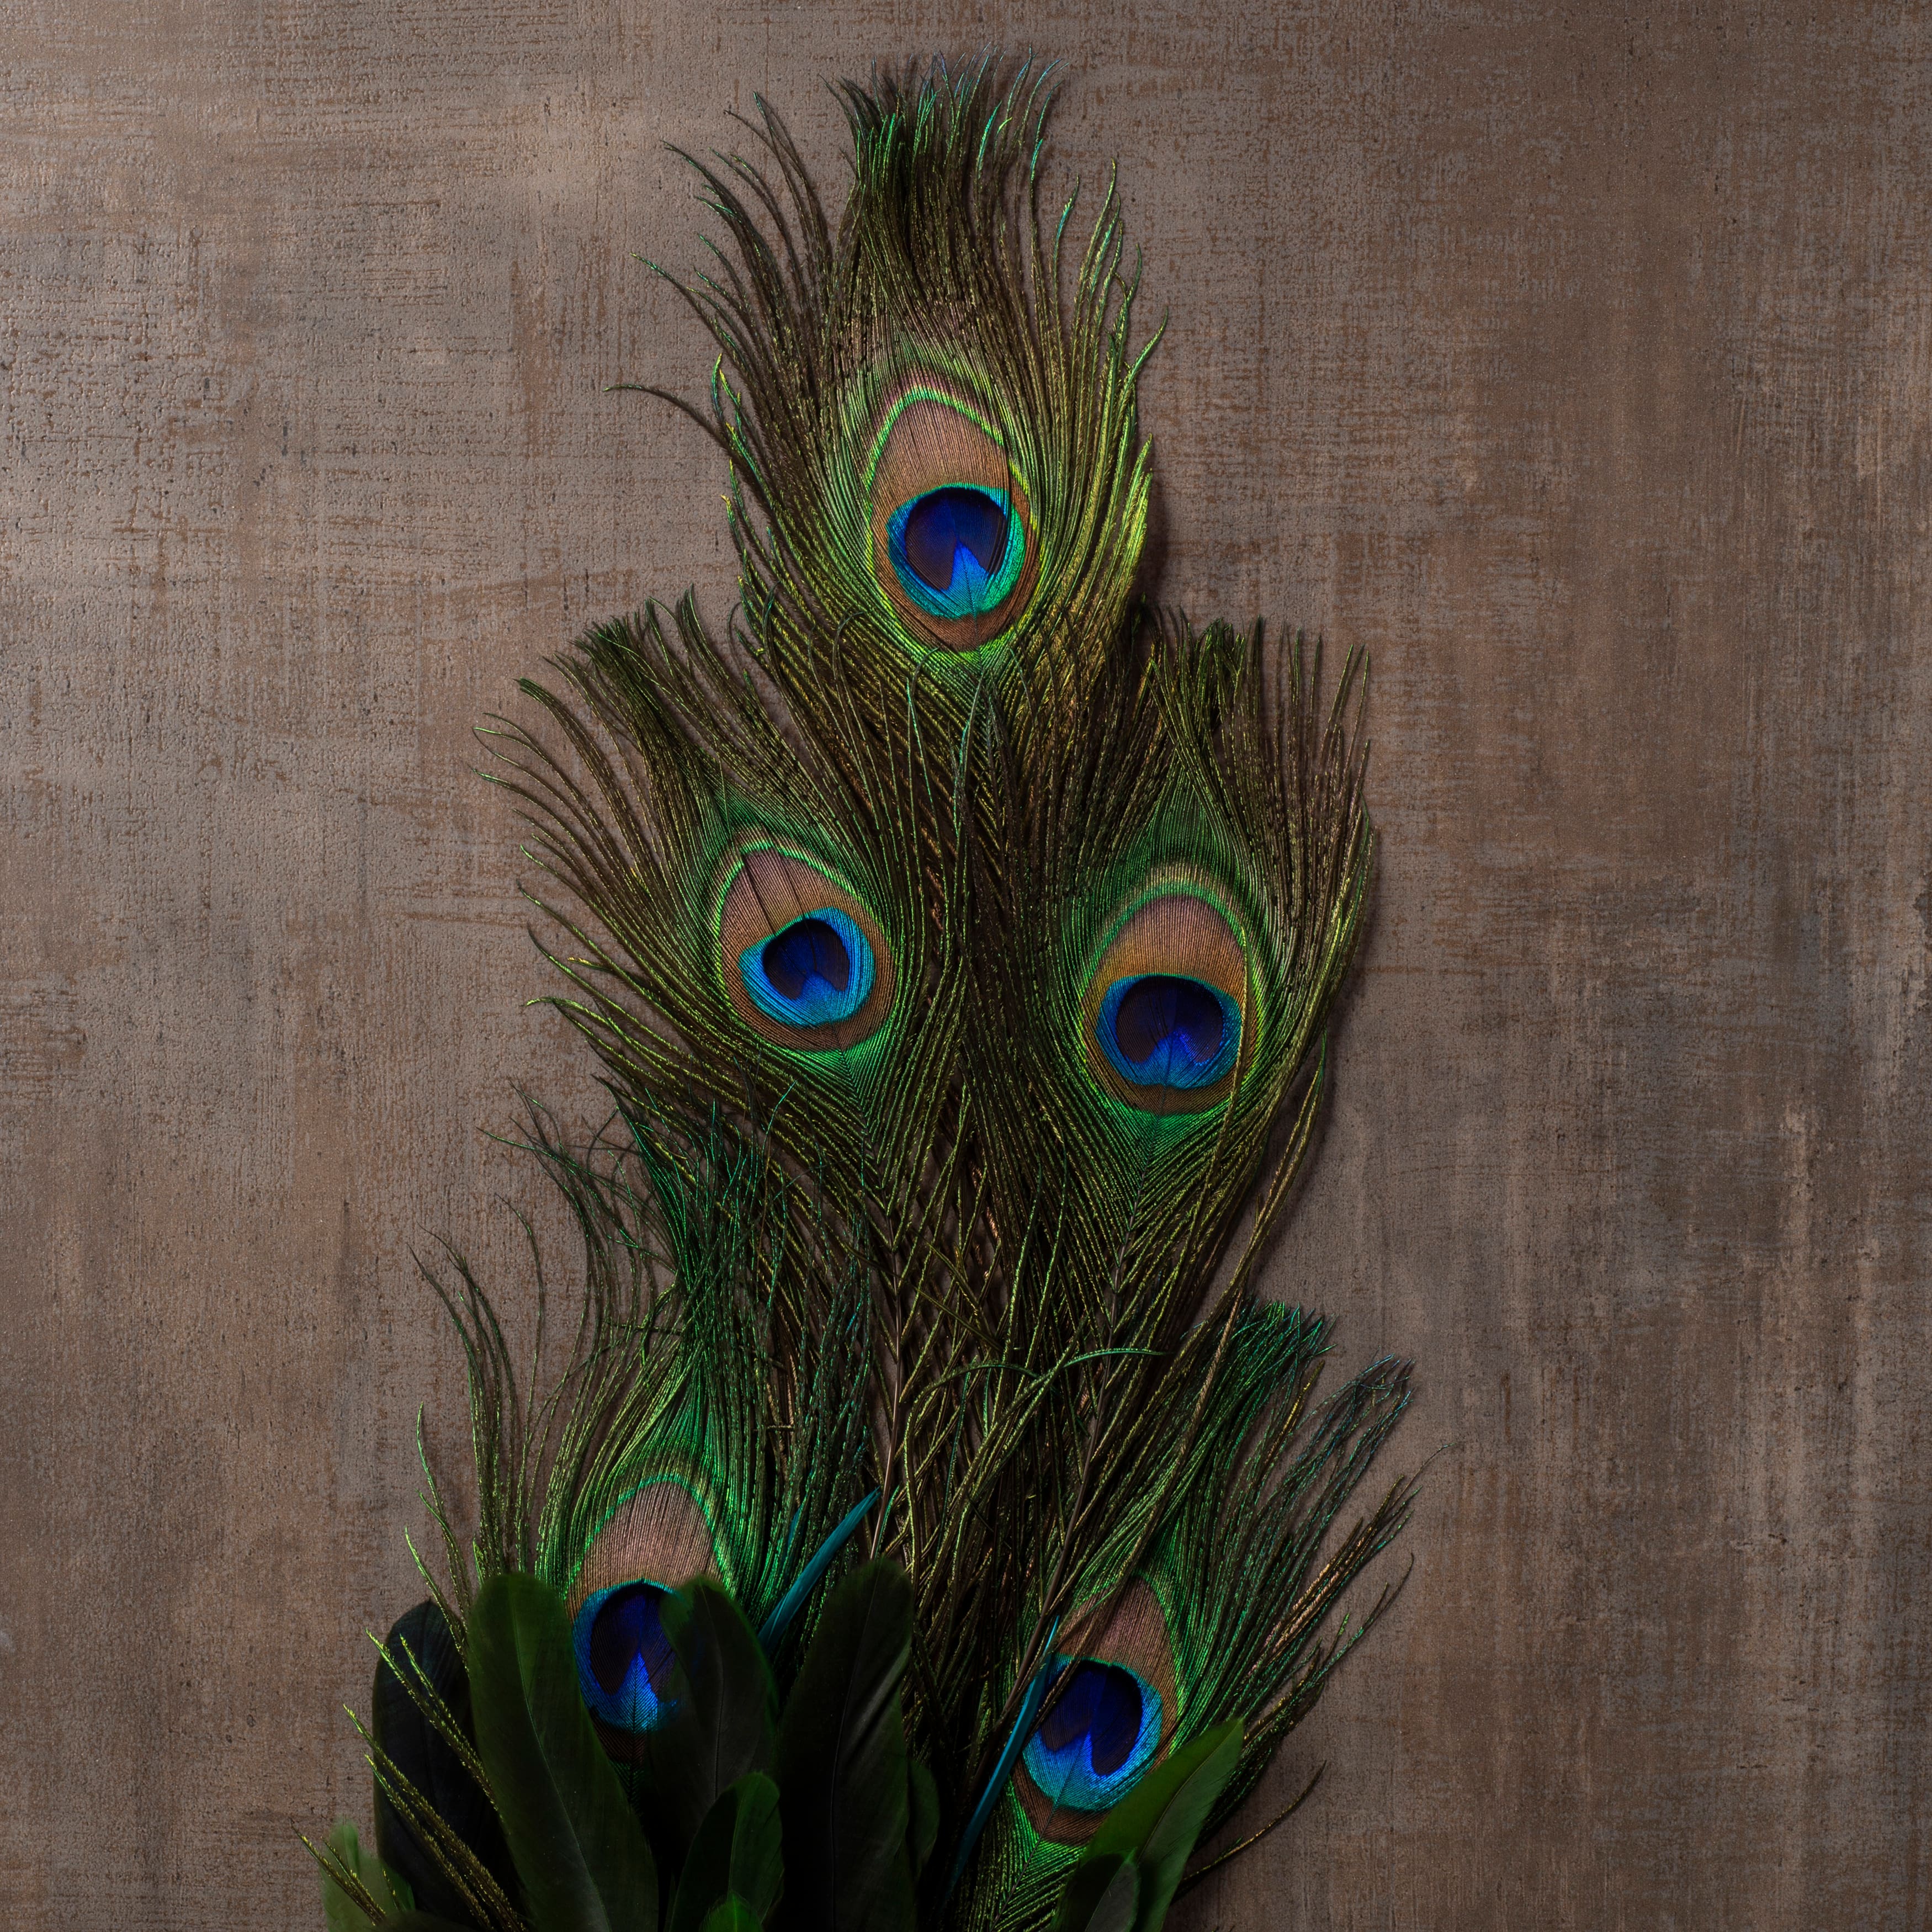 2 stems, cut as shown Peacock Eyes 